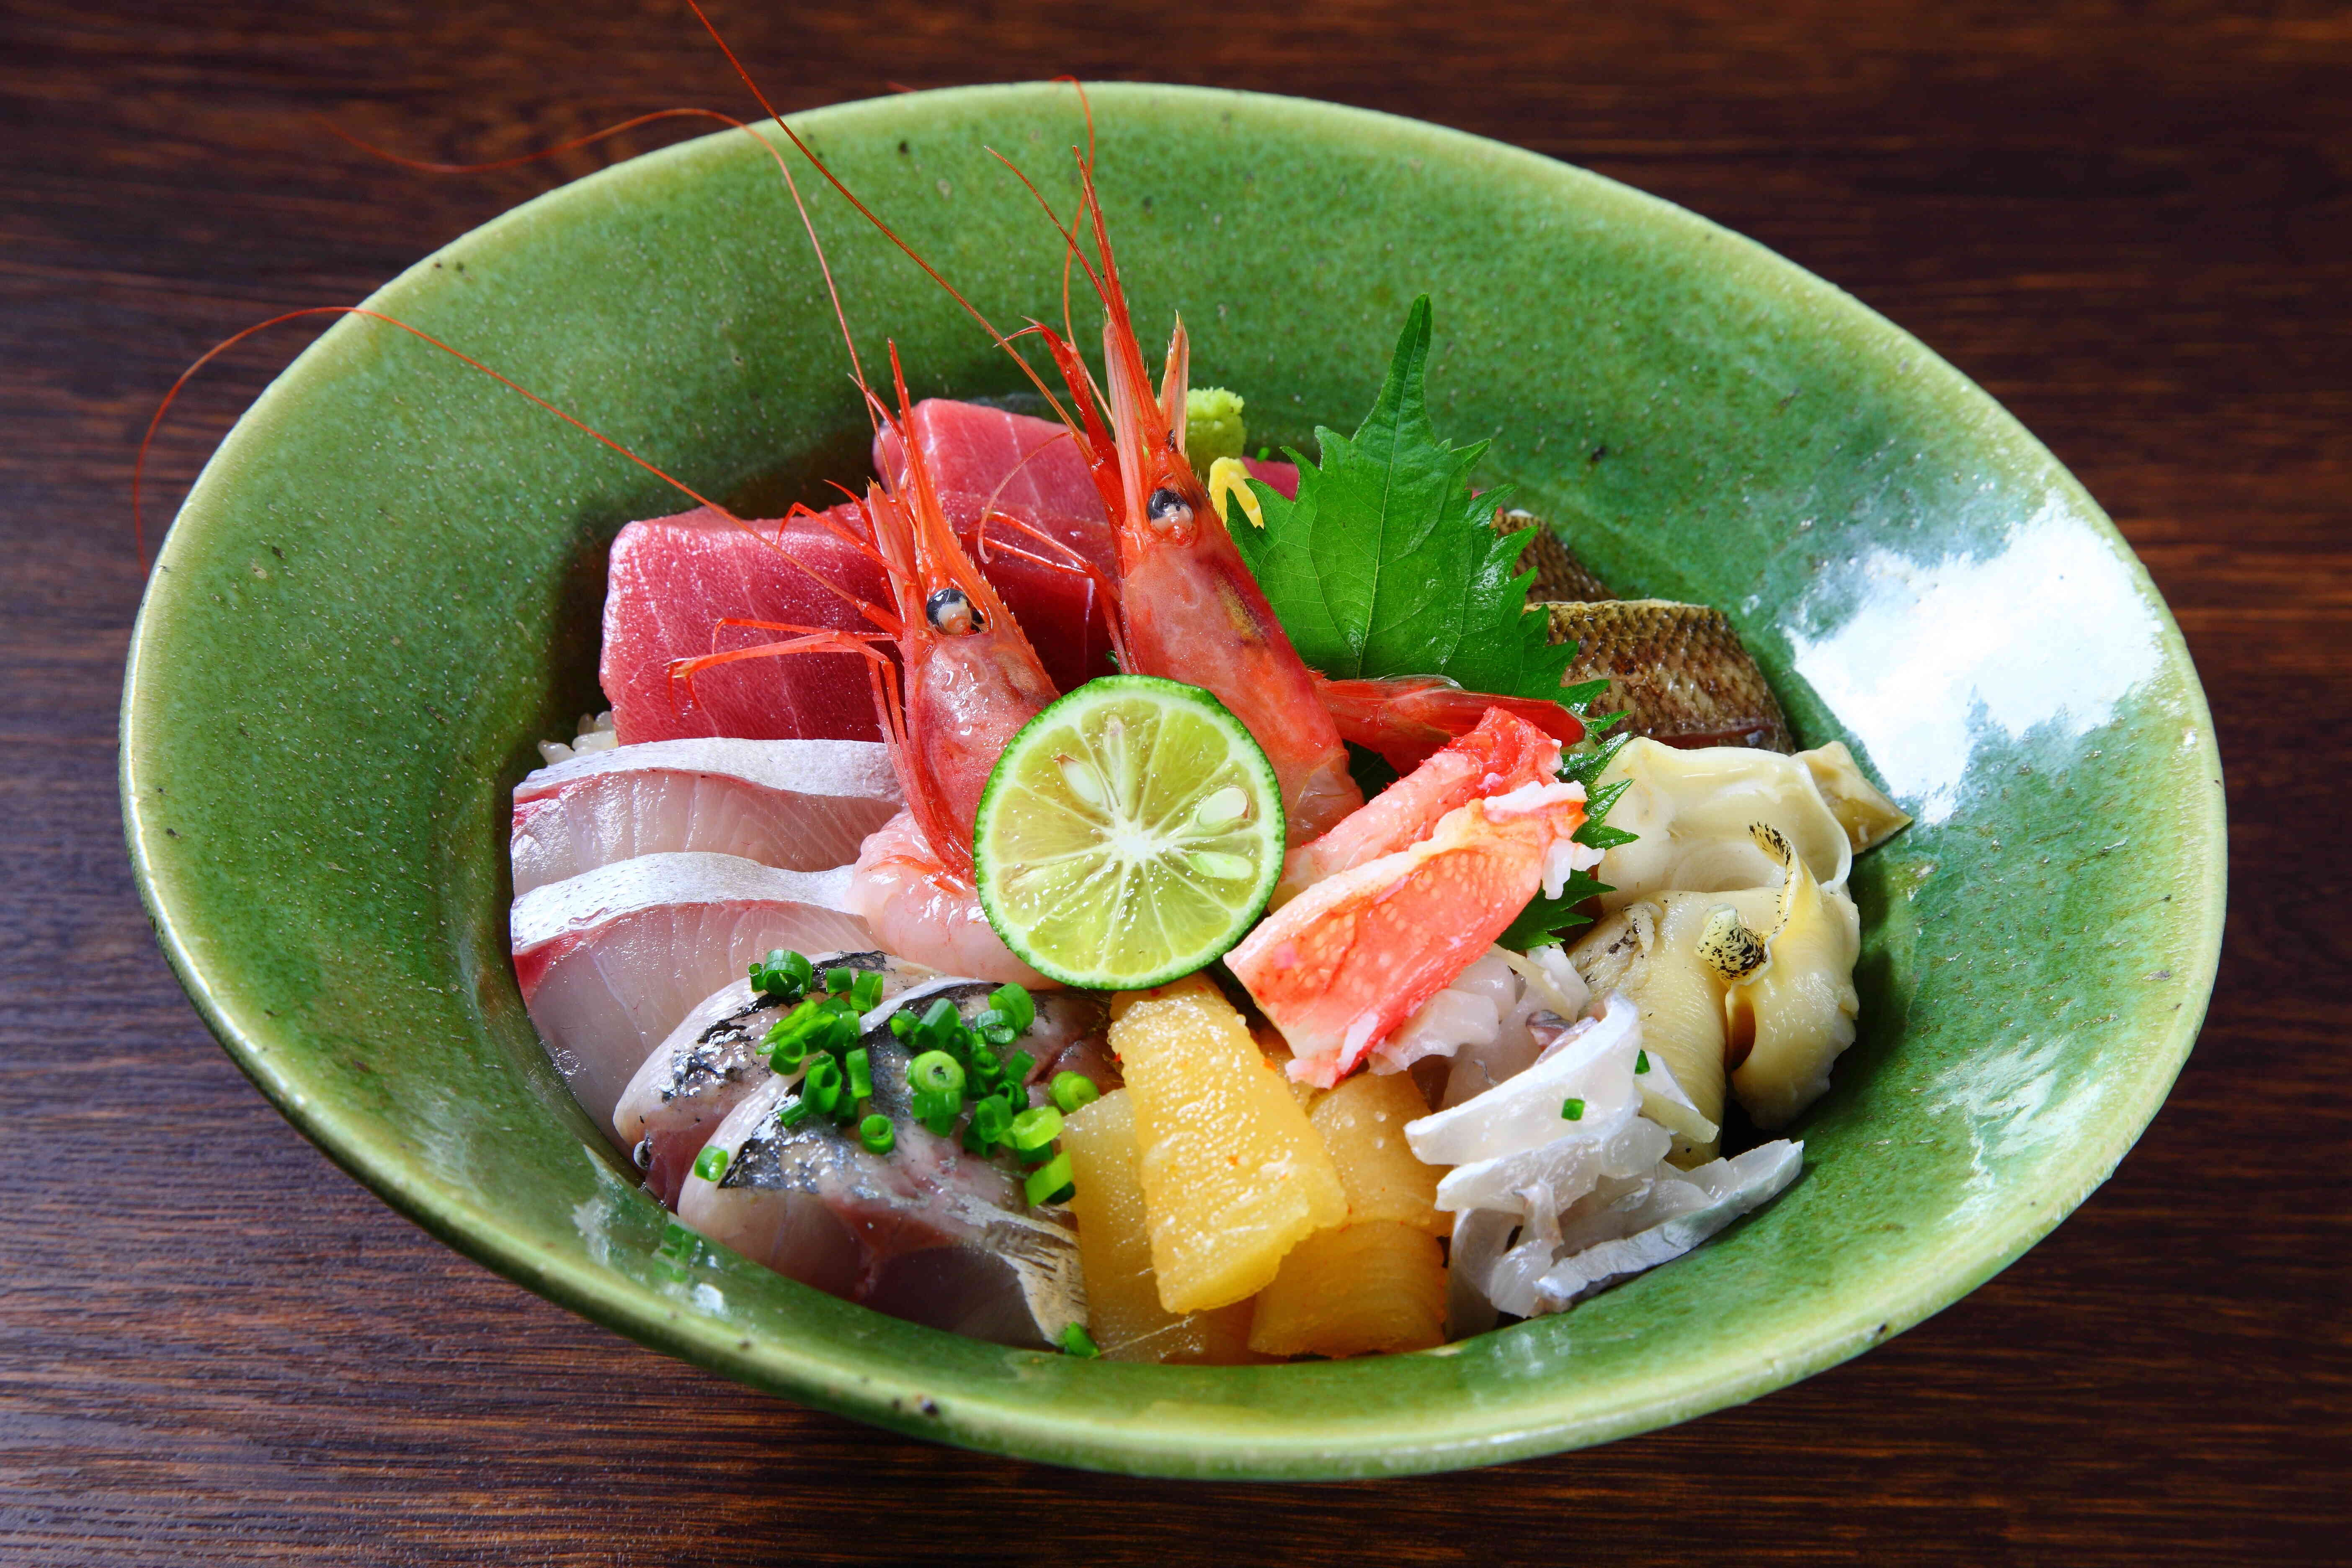 看板メニューの『上海鮮丼』。
新鮮な旬の魚介が9種類のります。